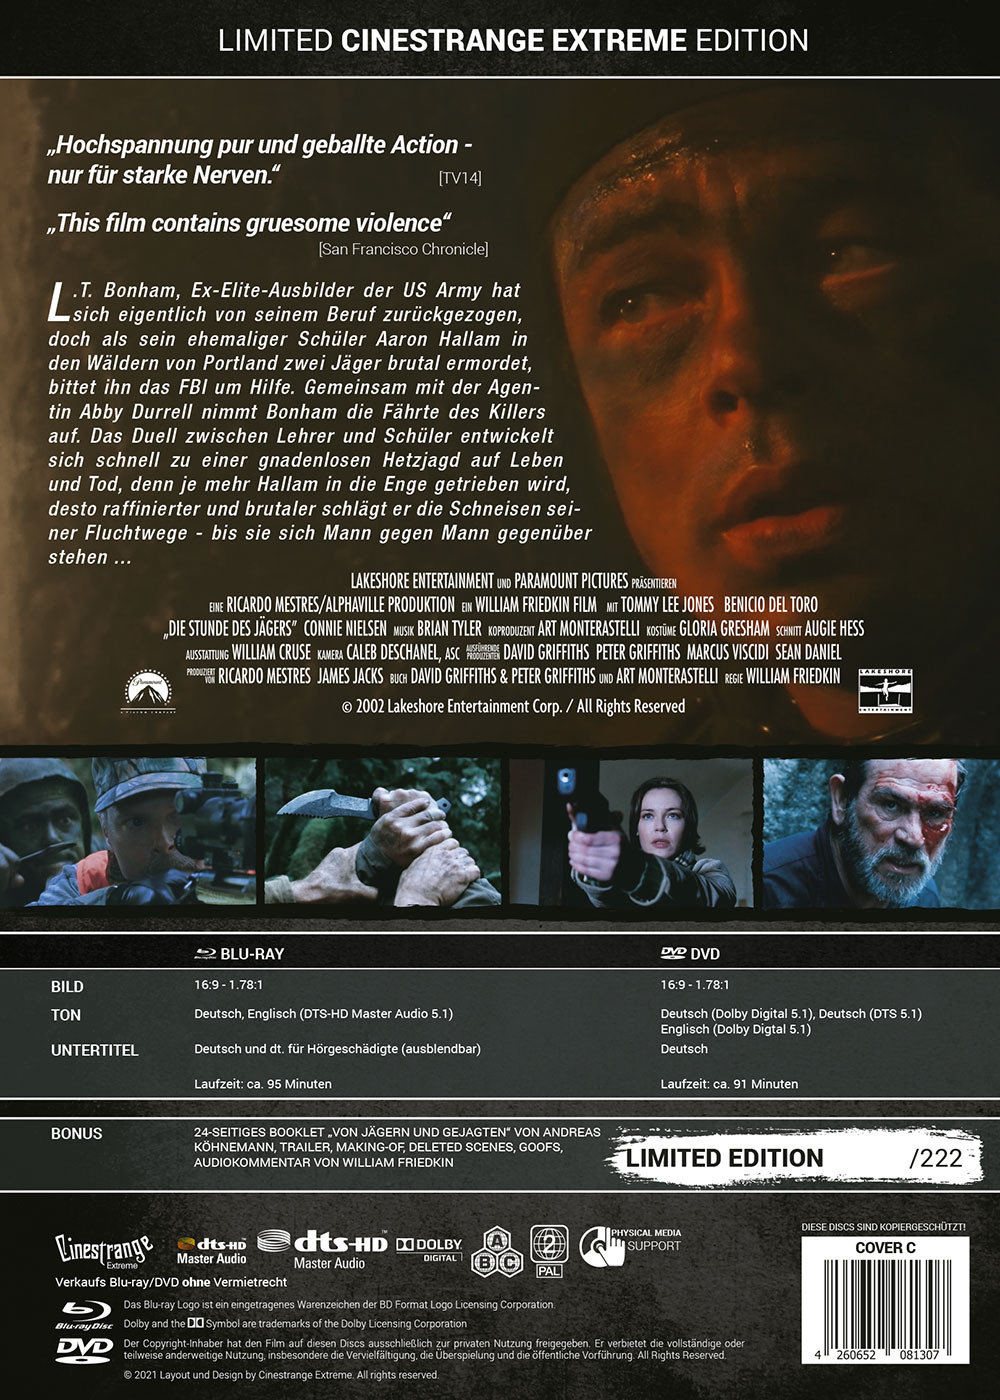 Stunde des Jägers, Die - Uncut Mediabook Edition (DVD+blu-ray) (C)